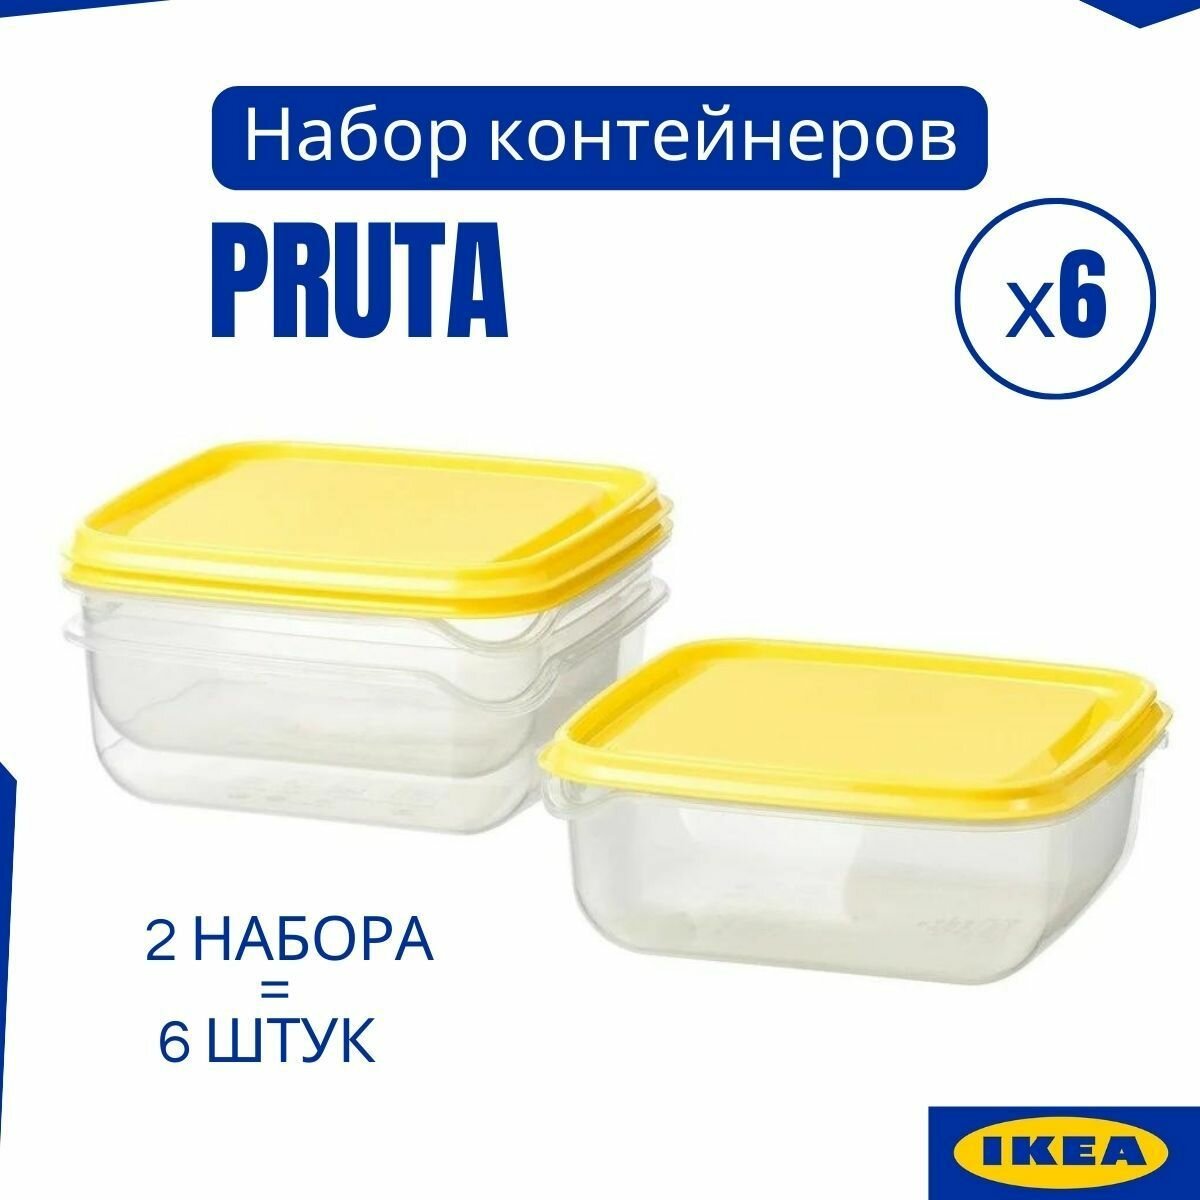 Контейнеры для продуктов икеа 6 шт, контейнеры для хранения еды PRUTA IKEA, набор